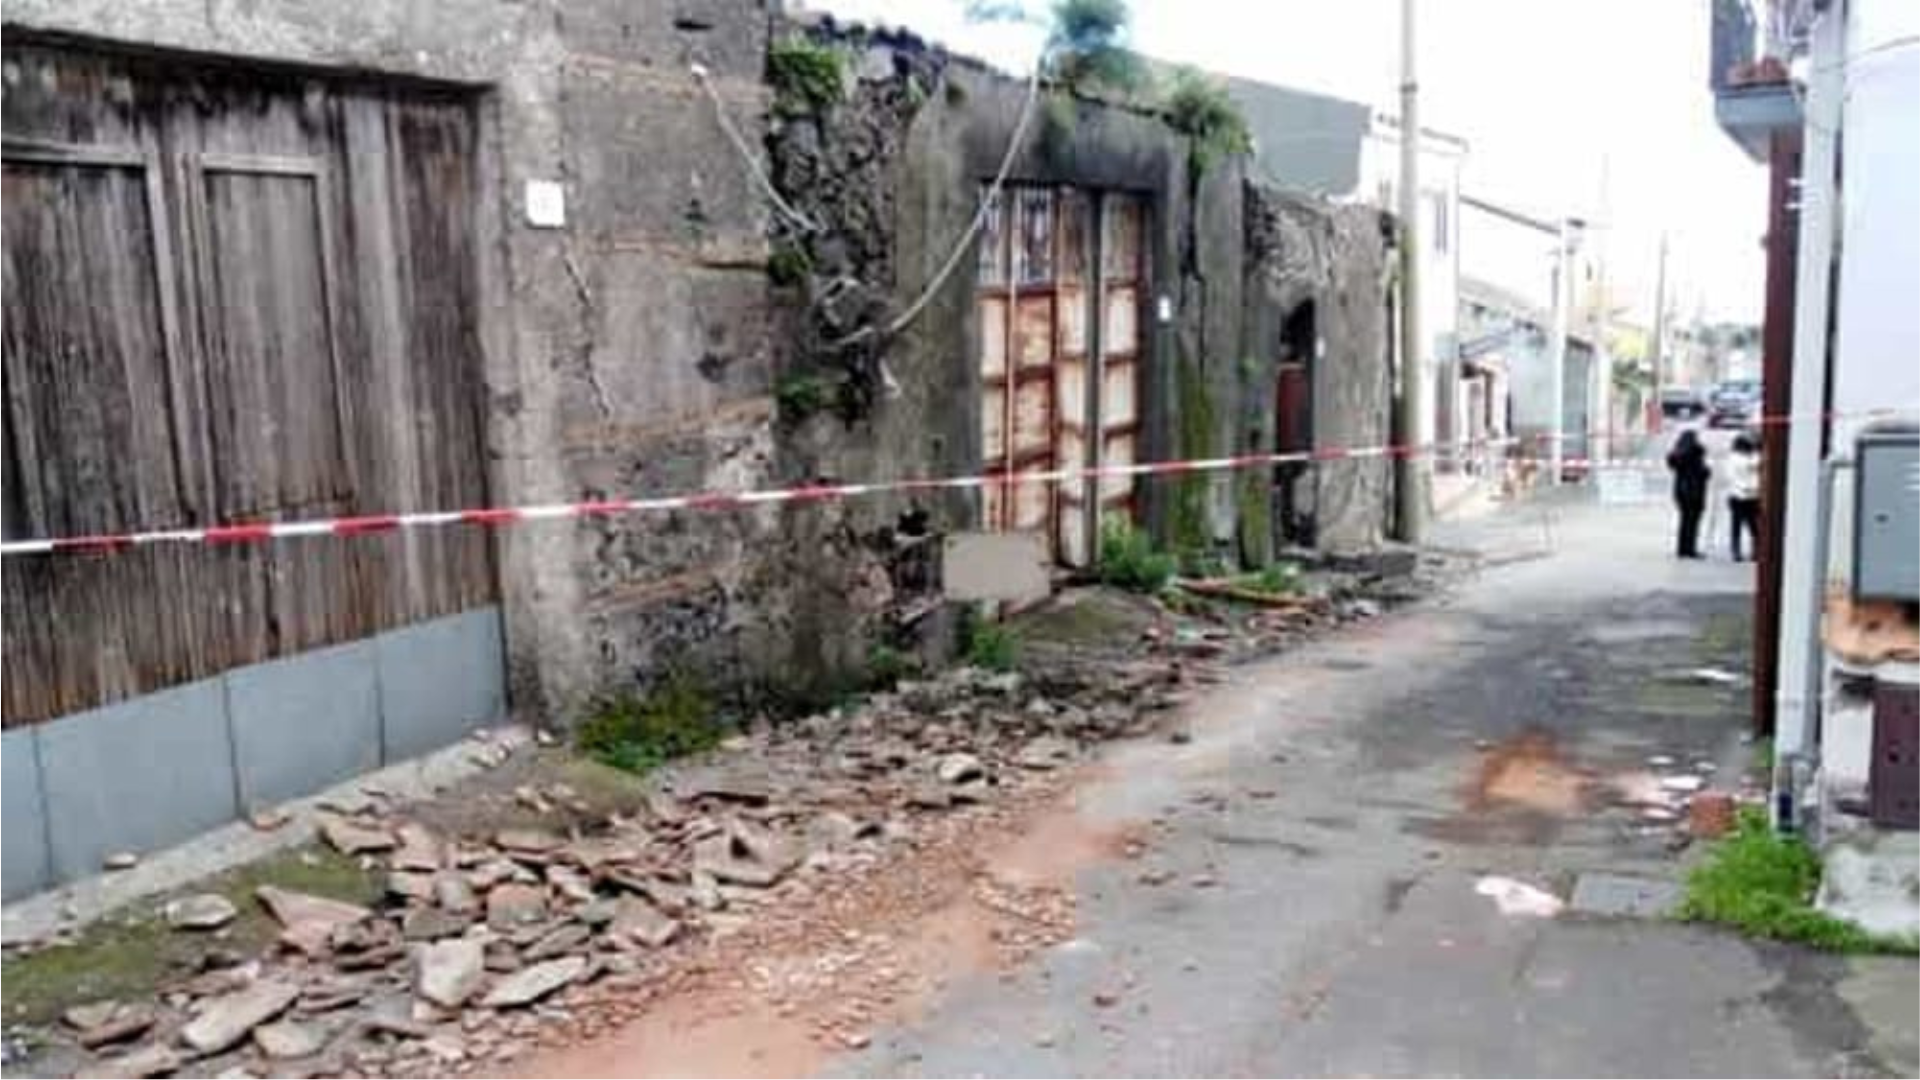 Aci Sant’Antonio, l’inchiesta sui fondi post-sisma di Santo Stefano: 42 indagati<br>Soldi per ricostruzione assegnati indebitamente e dietro compenso